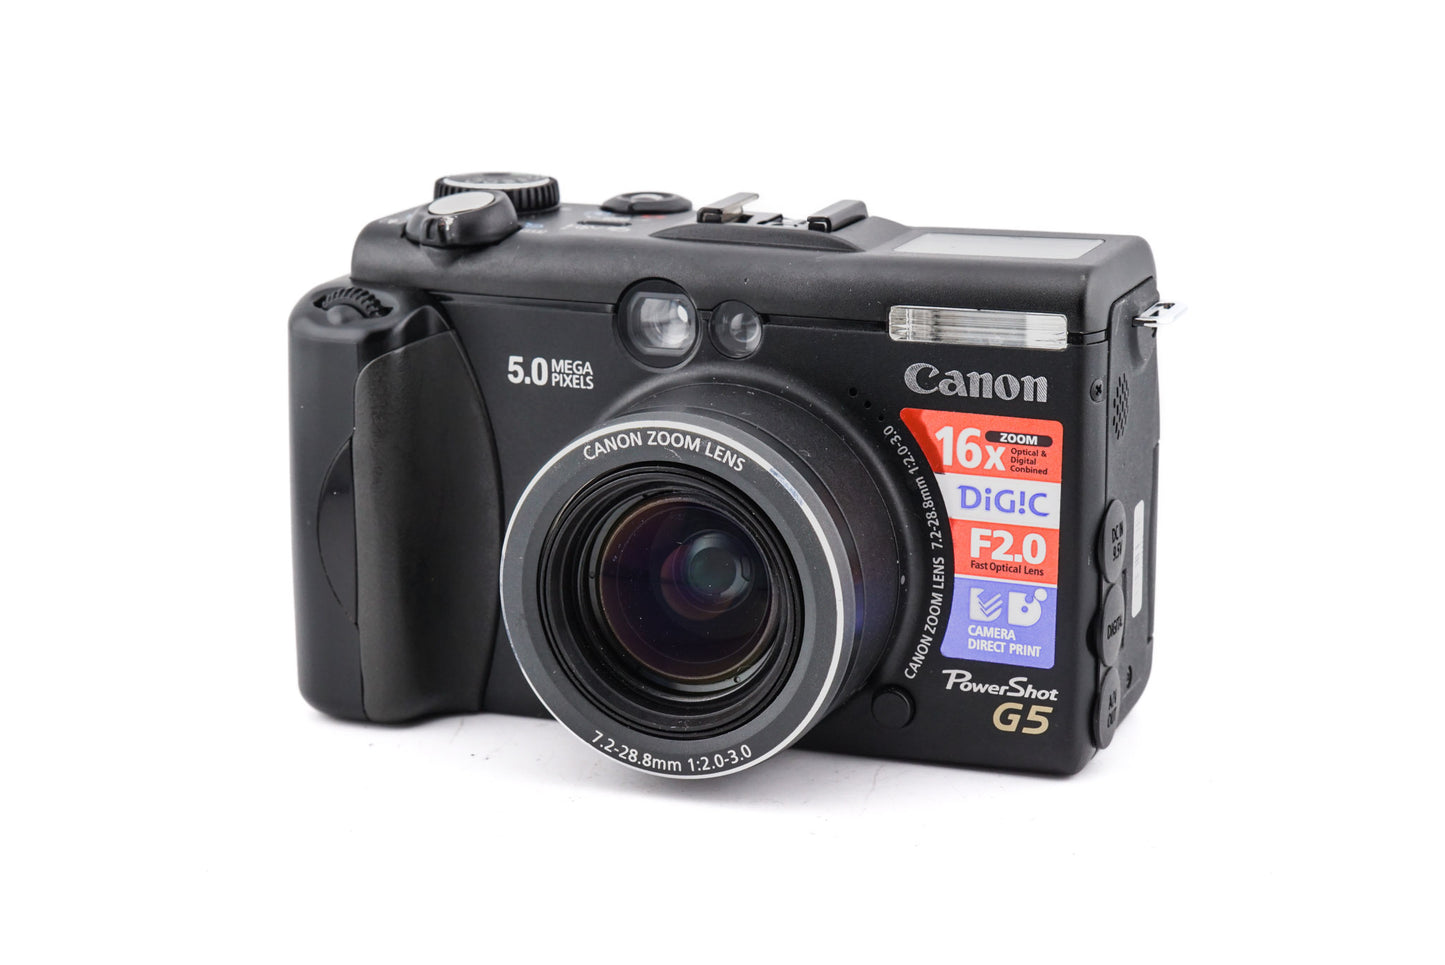 Canon PowerShot G5 - Camera